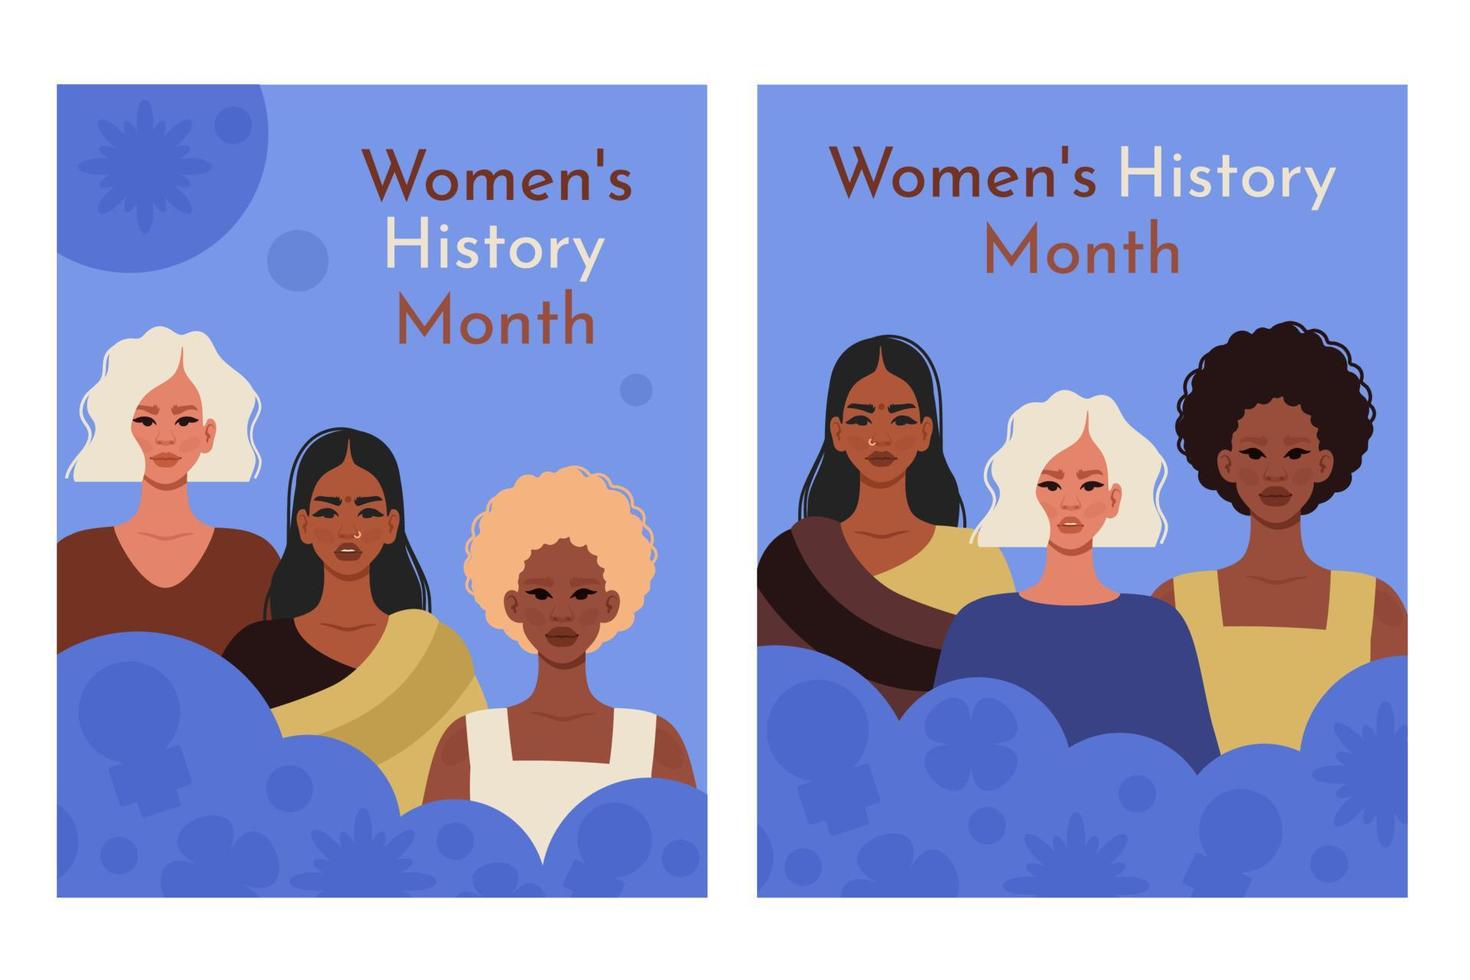 conjunto de De las mujeres historia mes tarjetas joven De las mujeres de diferente nacionalidades feminismo, mujer empoderamiento, diversidad, género igualdad concepto. vector ilustración para bandera, social medios de comunicación correo, póster